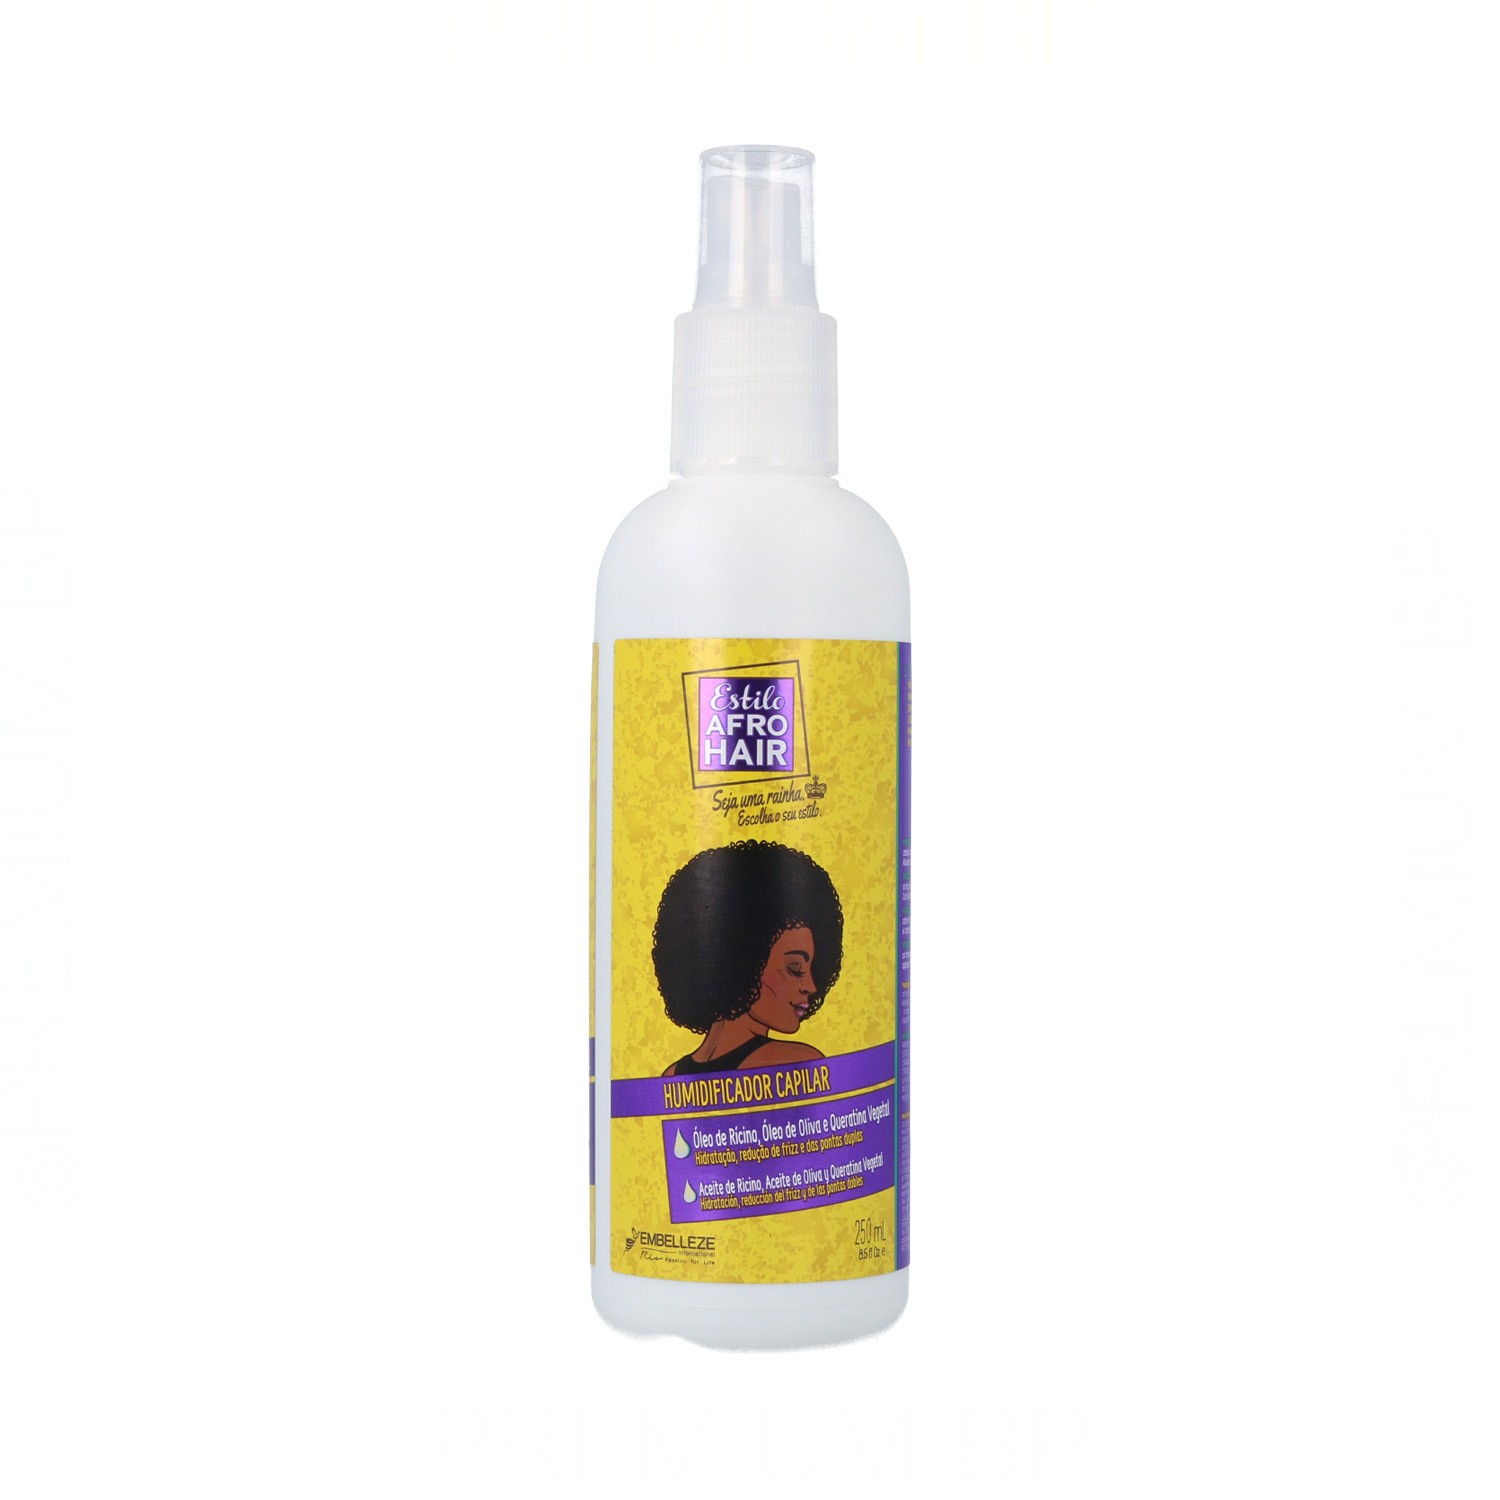 Novex - Novex afro hair humidificador capilar 250 ml, ¡deja tus rizos definidos! Belleza y cuidado de tu cabello y tu piel con Novex.